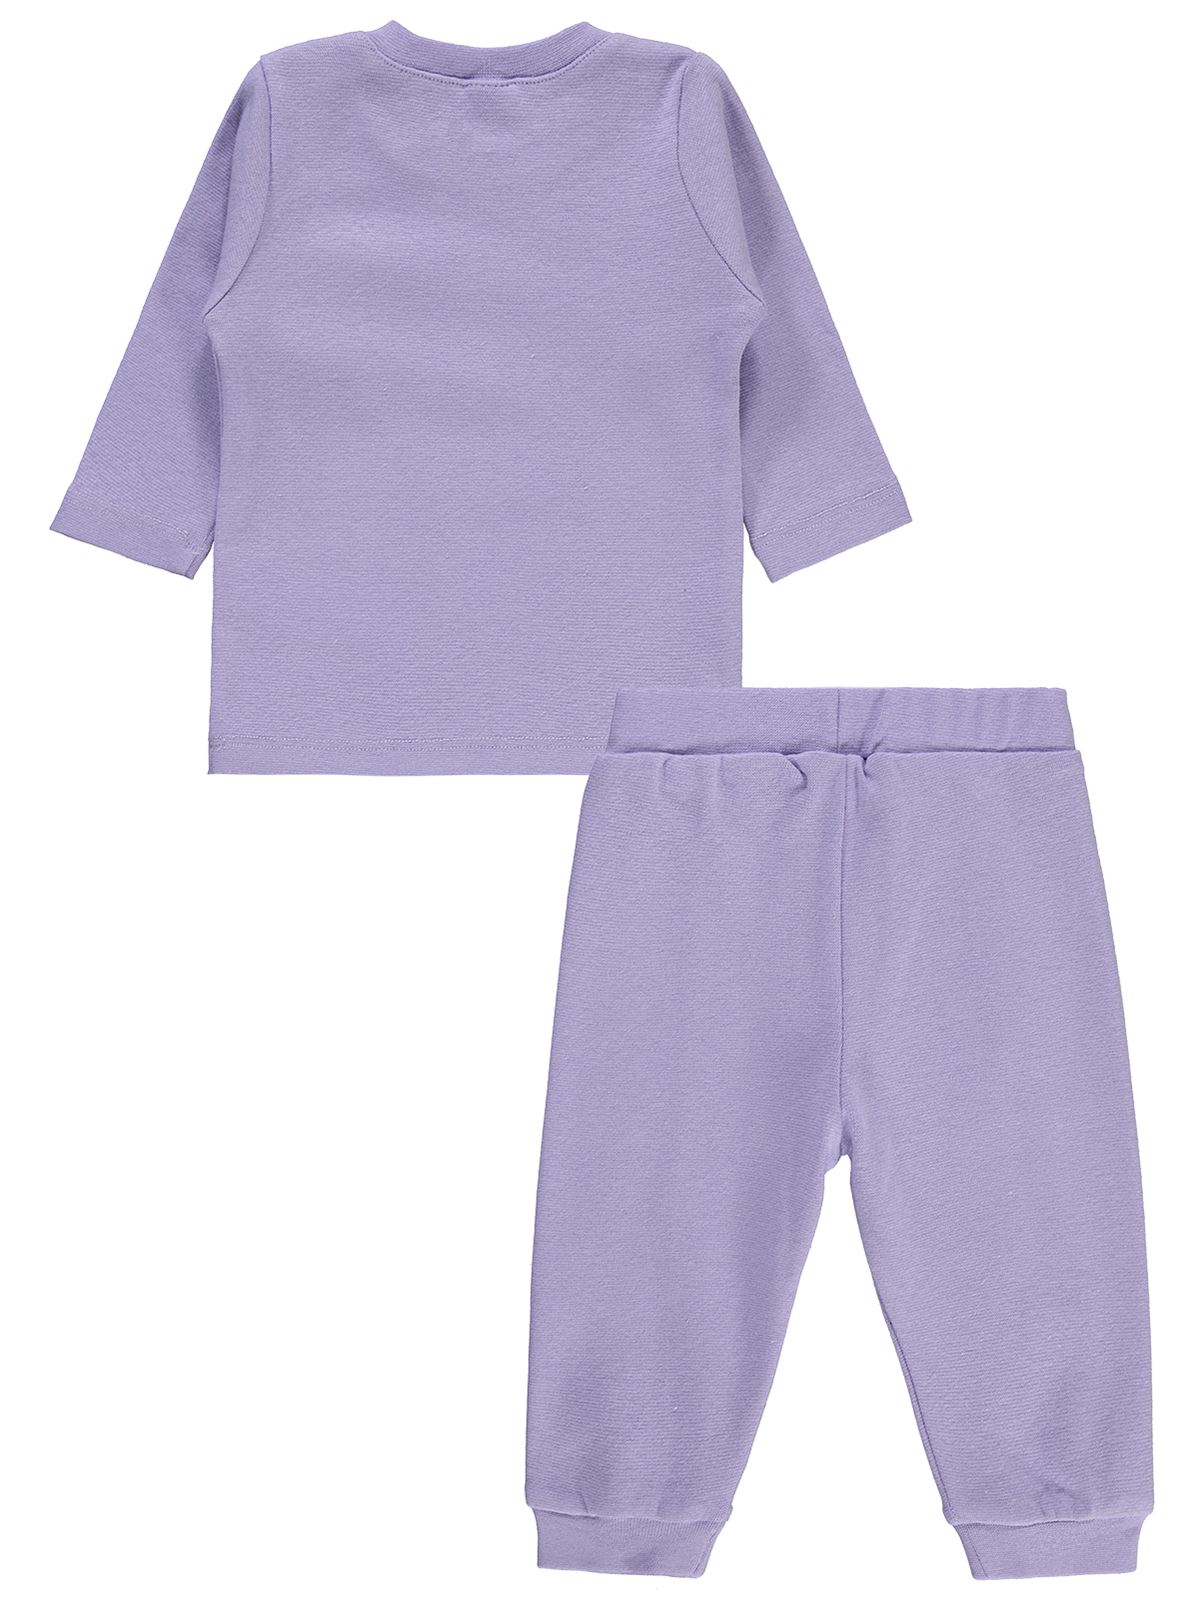 Civil Baby Bebek Pijama Takımı 6-18 Ay Lavanta